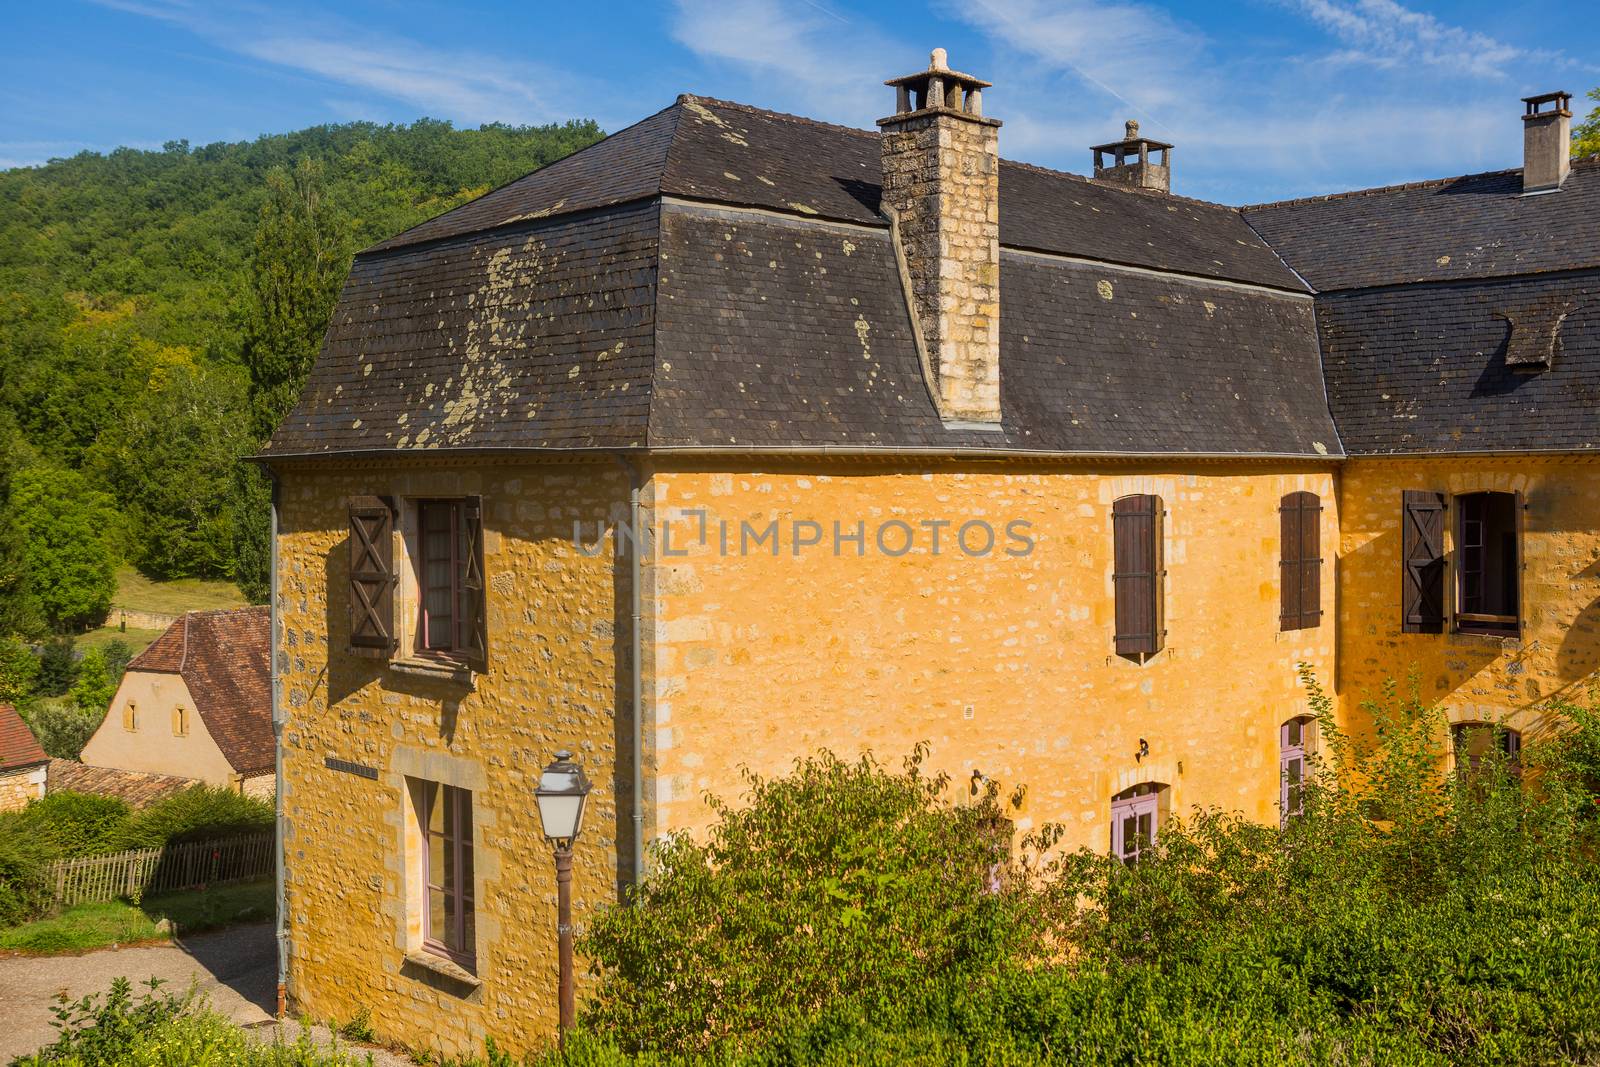 Perigord Noir, Saint Amand de Coly typical houses, labelled Les Plus Beaux Villages de France - The Most Beautiful Villages of France